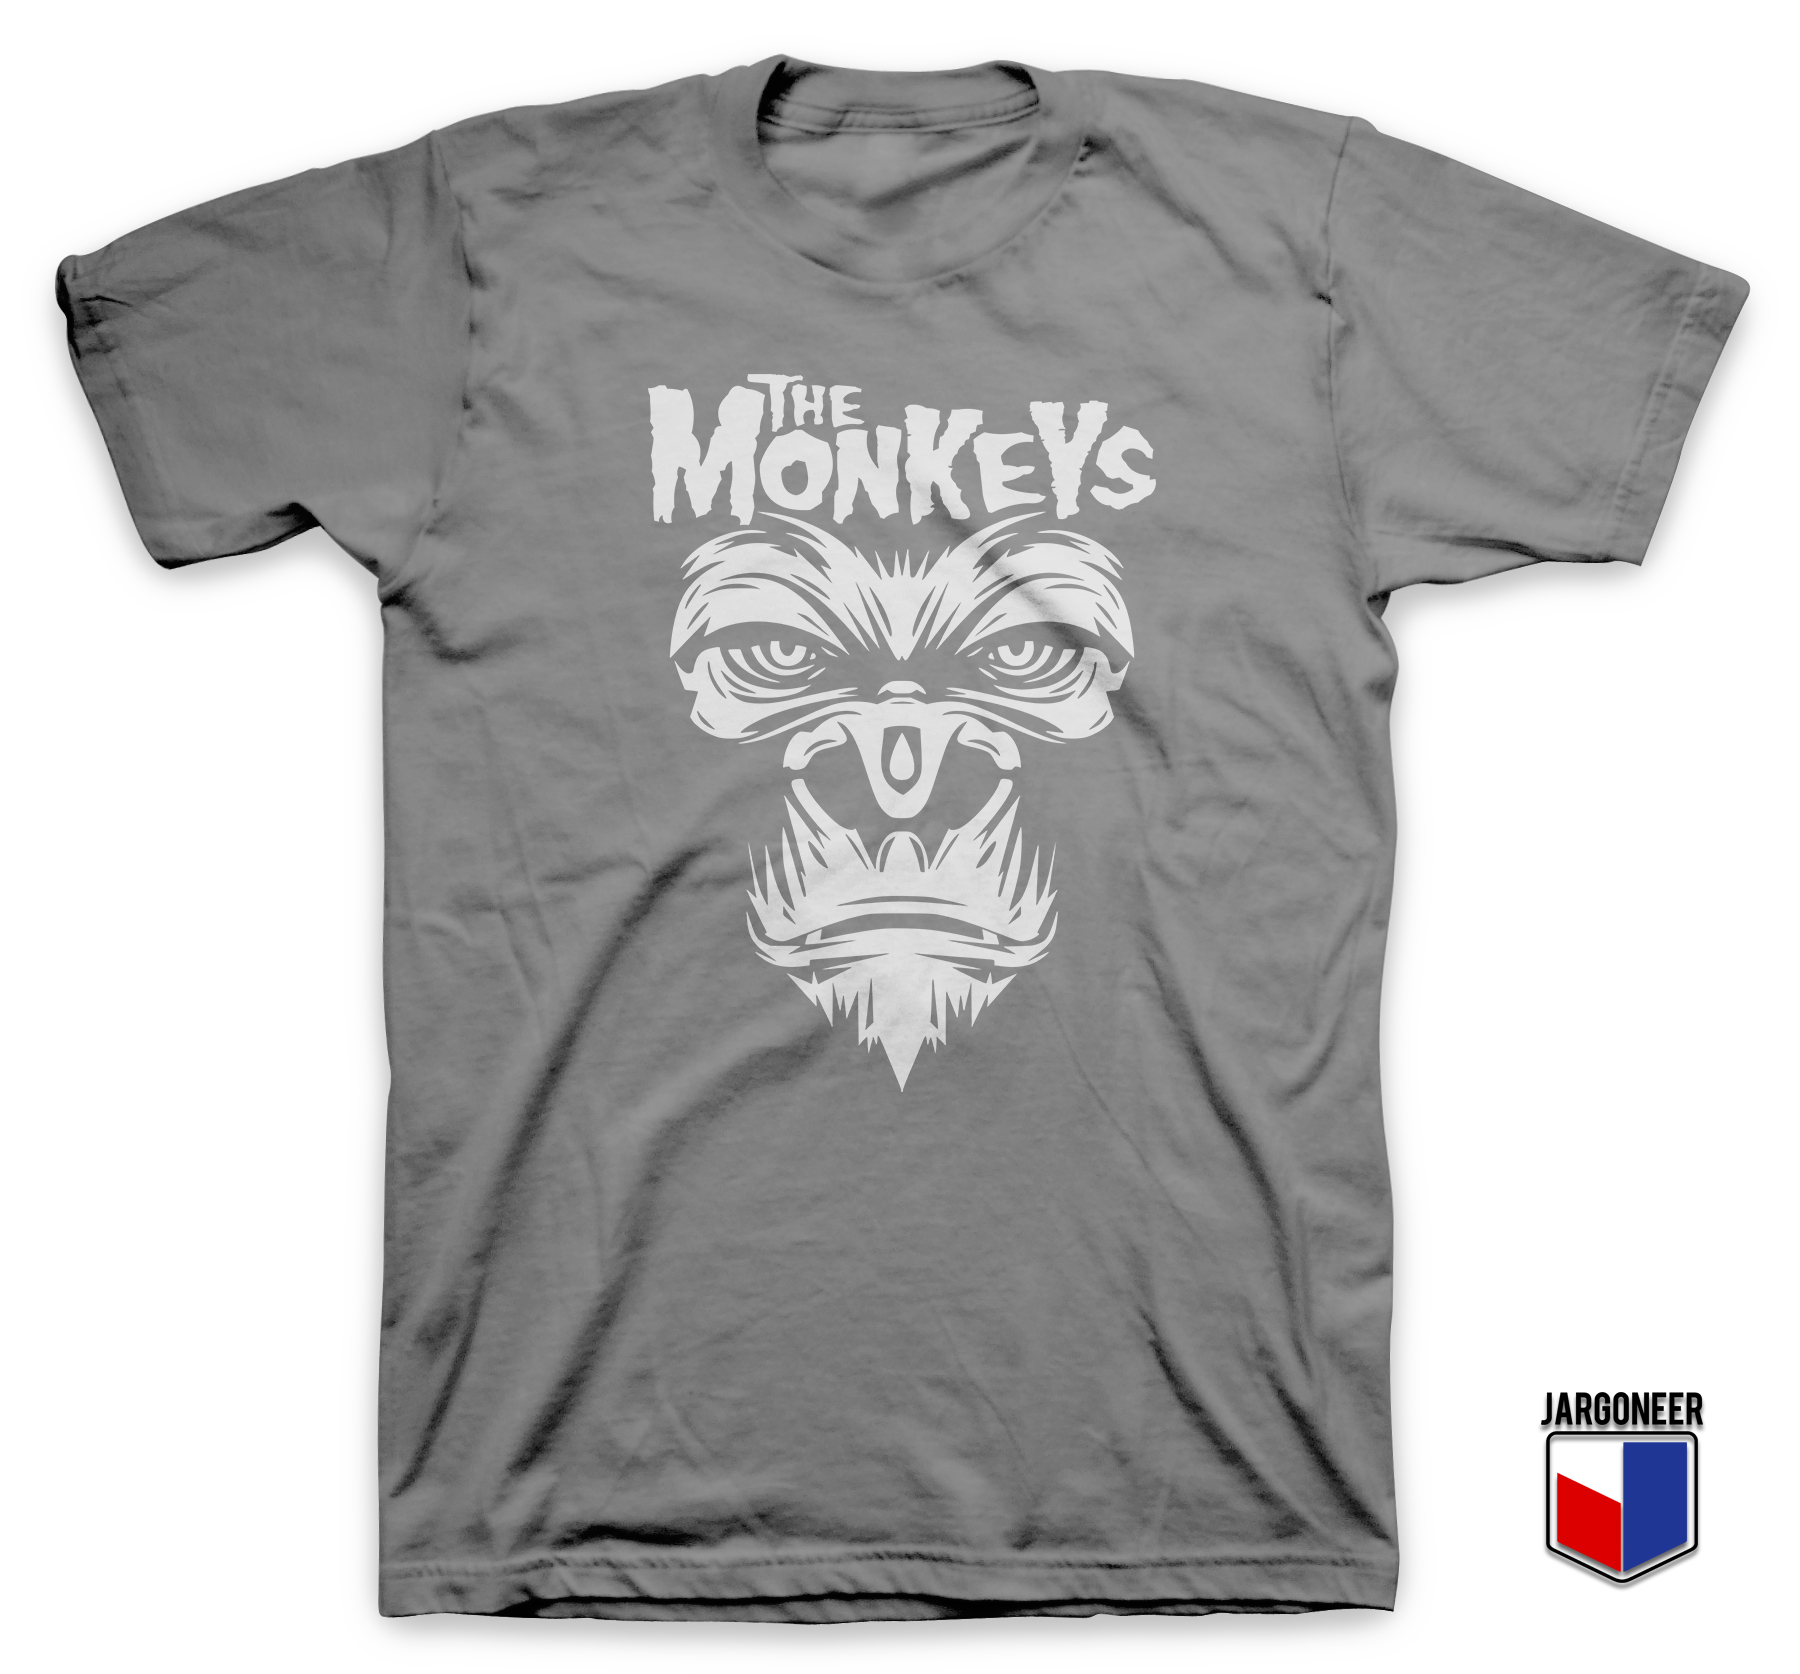 The Monkeys Gray T Shirt - Shop Unique Graphic Cool Shirt Designs